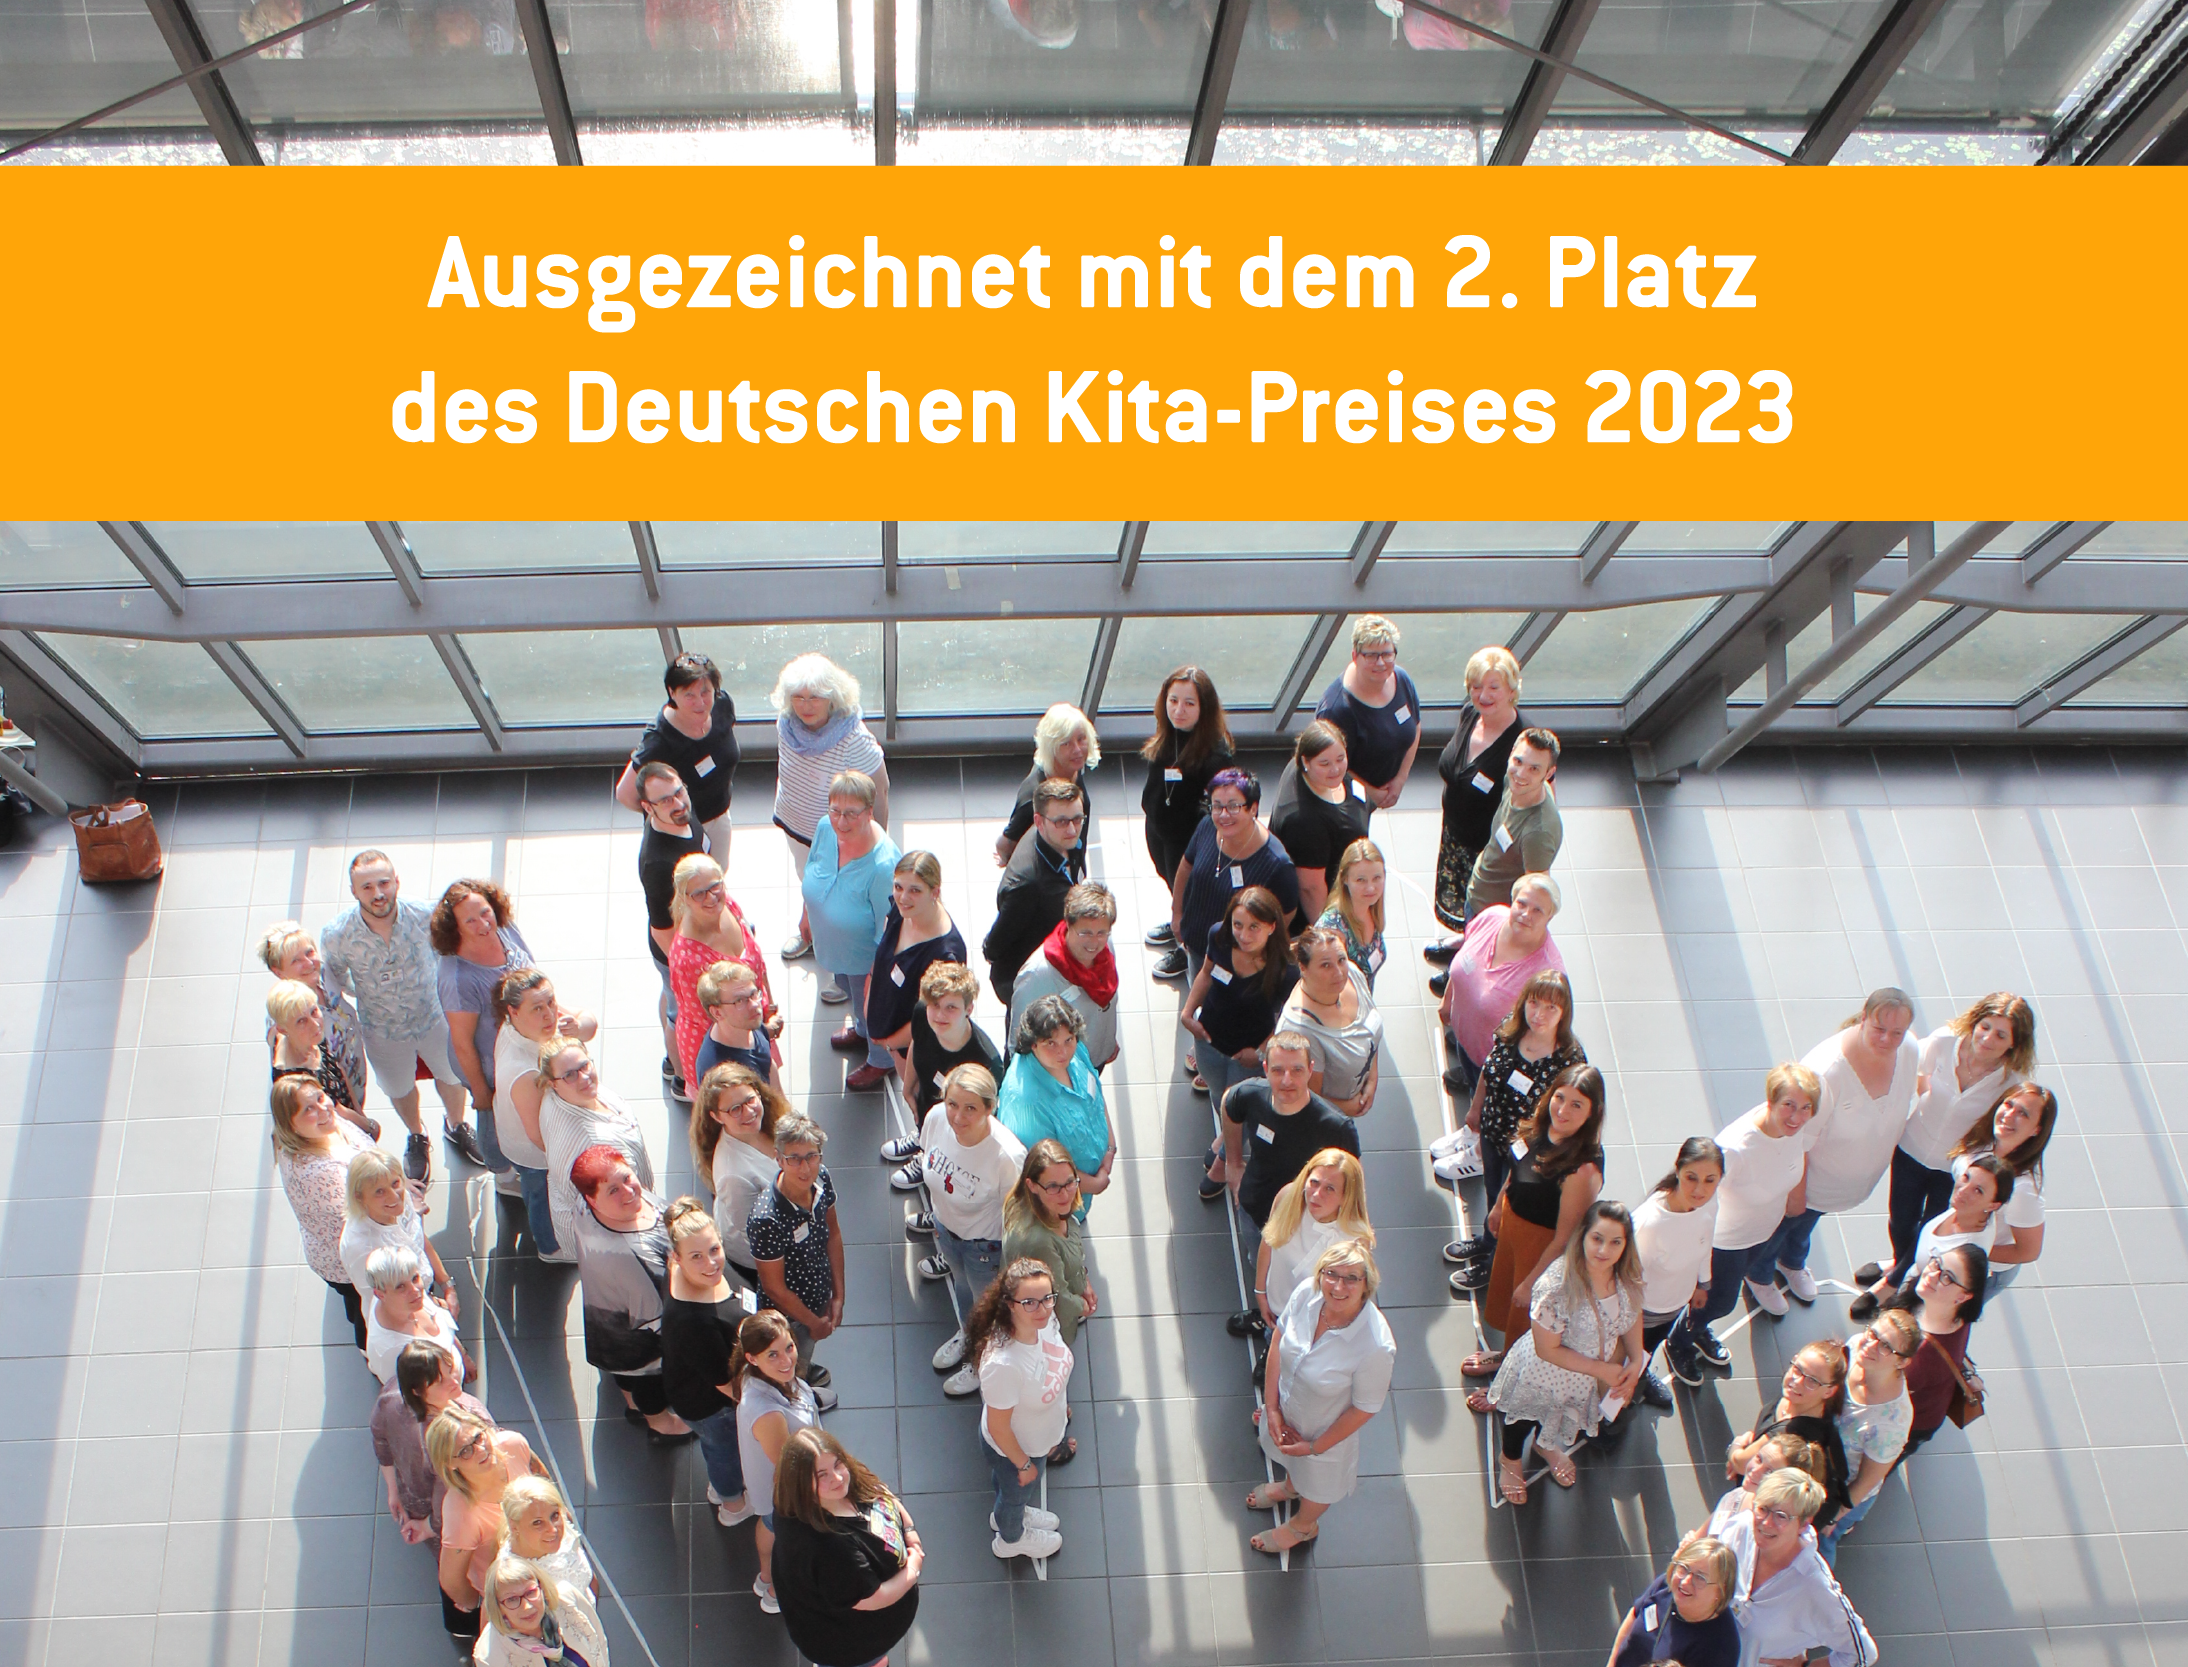 Bild der Gruppe von Projektbeteiligten. Auf einem Banner steht "Ausgezeichnet mit dem 2. Platz des Deutschen Kita-Preises 2023".